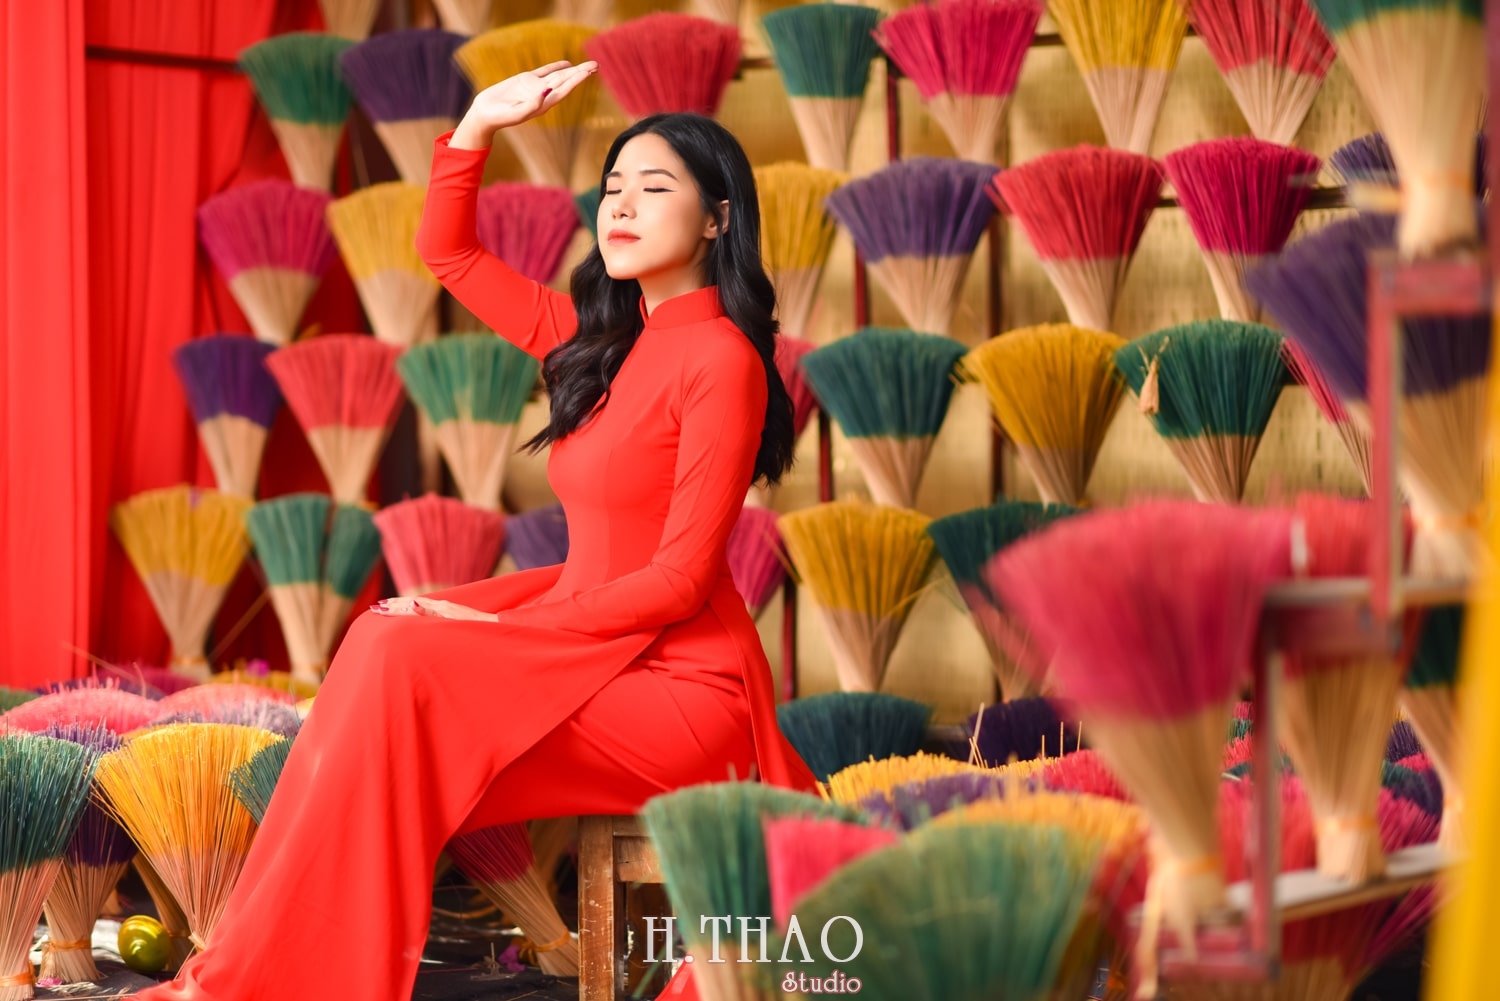 Ao dai alibaba 14 min - #15 Cách tạo dáng chụp áo dài Tết duyên dáng - HThao Studio